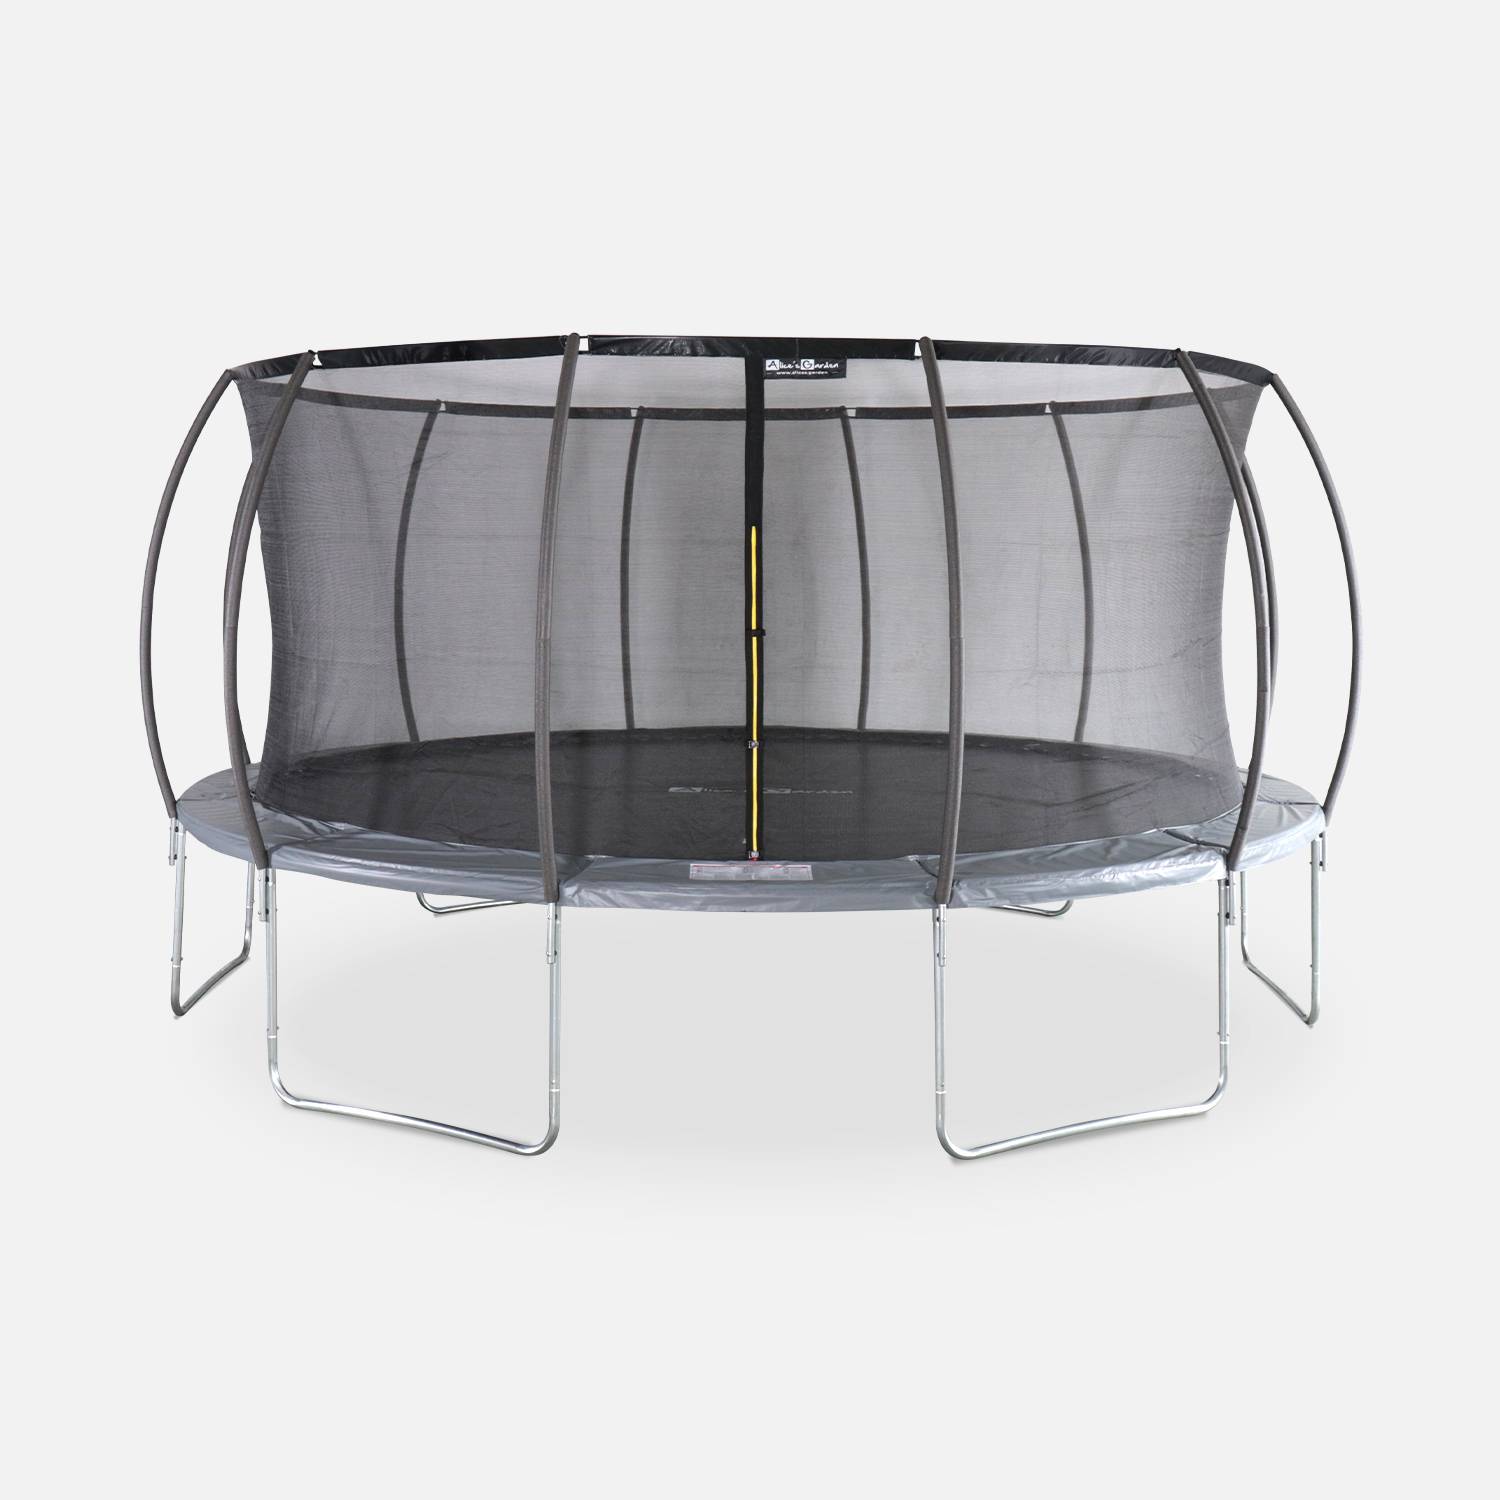 Trampoline rond Ø 490cm grijs met veiligheidsnet aan binnenzijde - Jupiter Inner – Nieuw model - trampoline voor tuin 4,9m 490 cm |Kwaliteit PRO. | EU Normen. Photo1